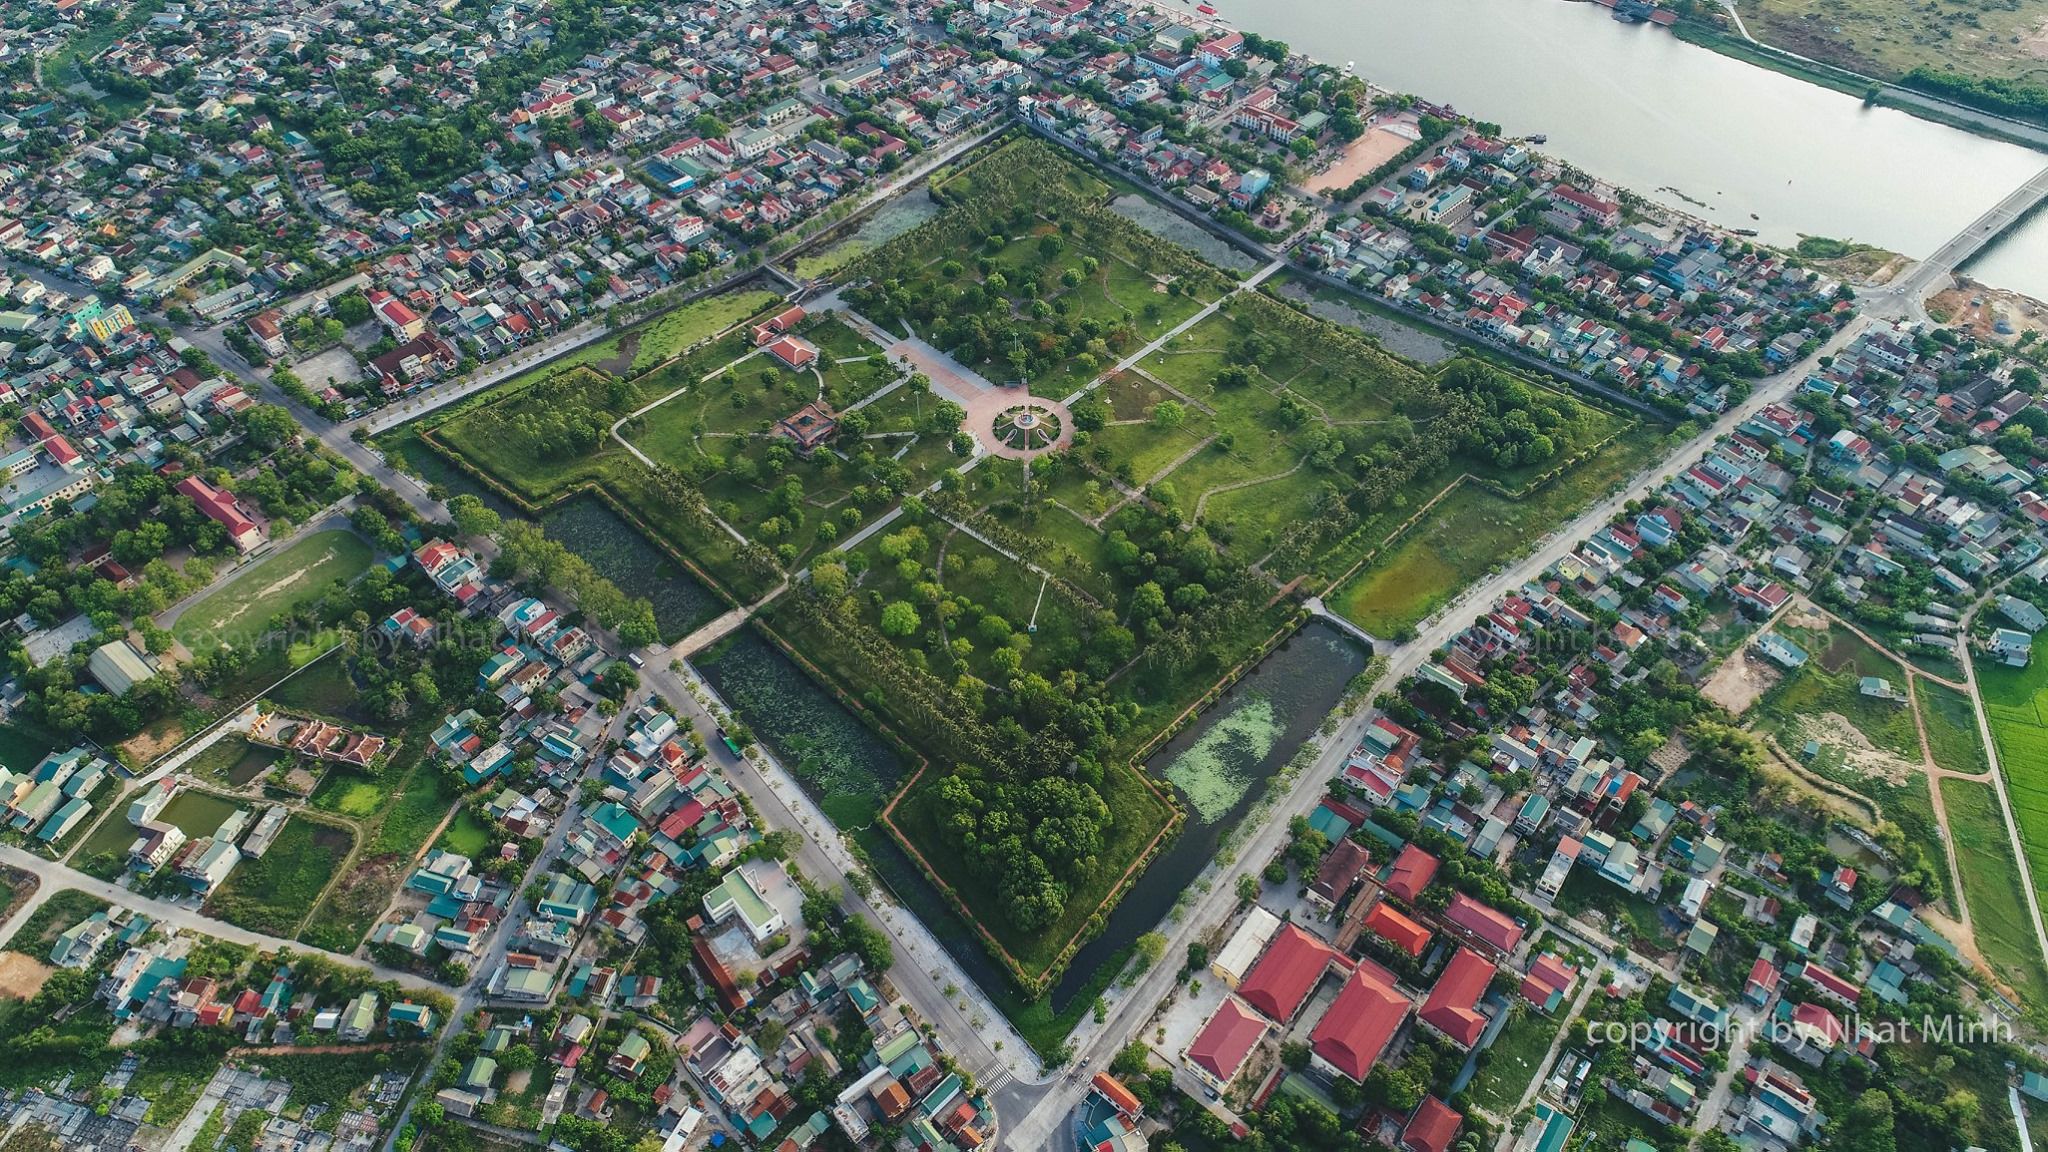 Thành cổ Quảng Trị nằm giữa lòng thành phố Huế với kiến trúc độc đáo, lịch sử phong phú và dấu ấn của nhiều đời chúa Nguyễn. Hãy để mình lạc vào không gian thời gian và tìm hiểu về lịch sử, văn hóa đặc sắc của vùng đất miền Trung.